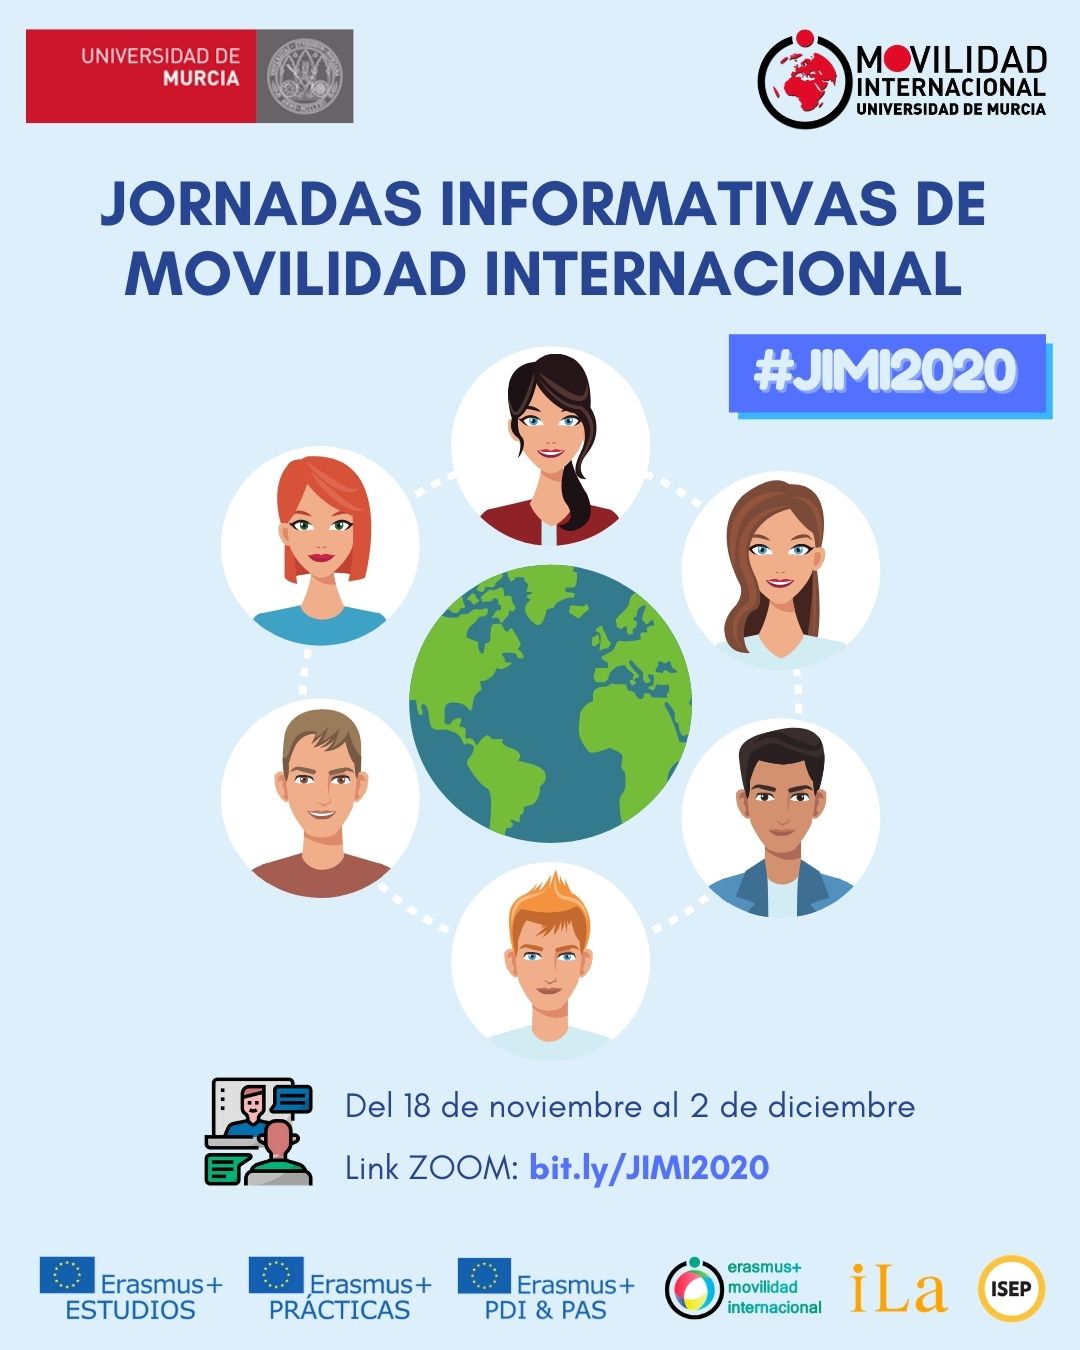 Continuan las Jornadas Informativas de Movilidad Internacional #JIMI2020